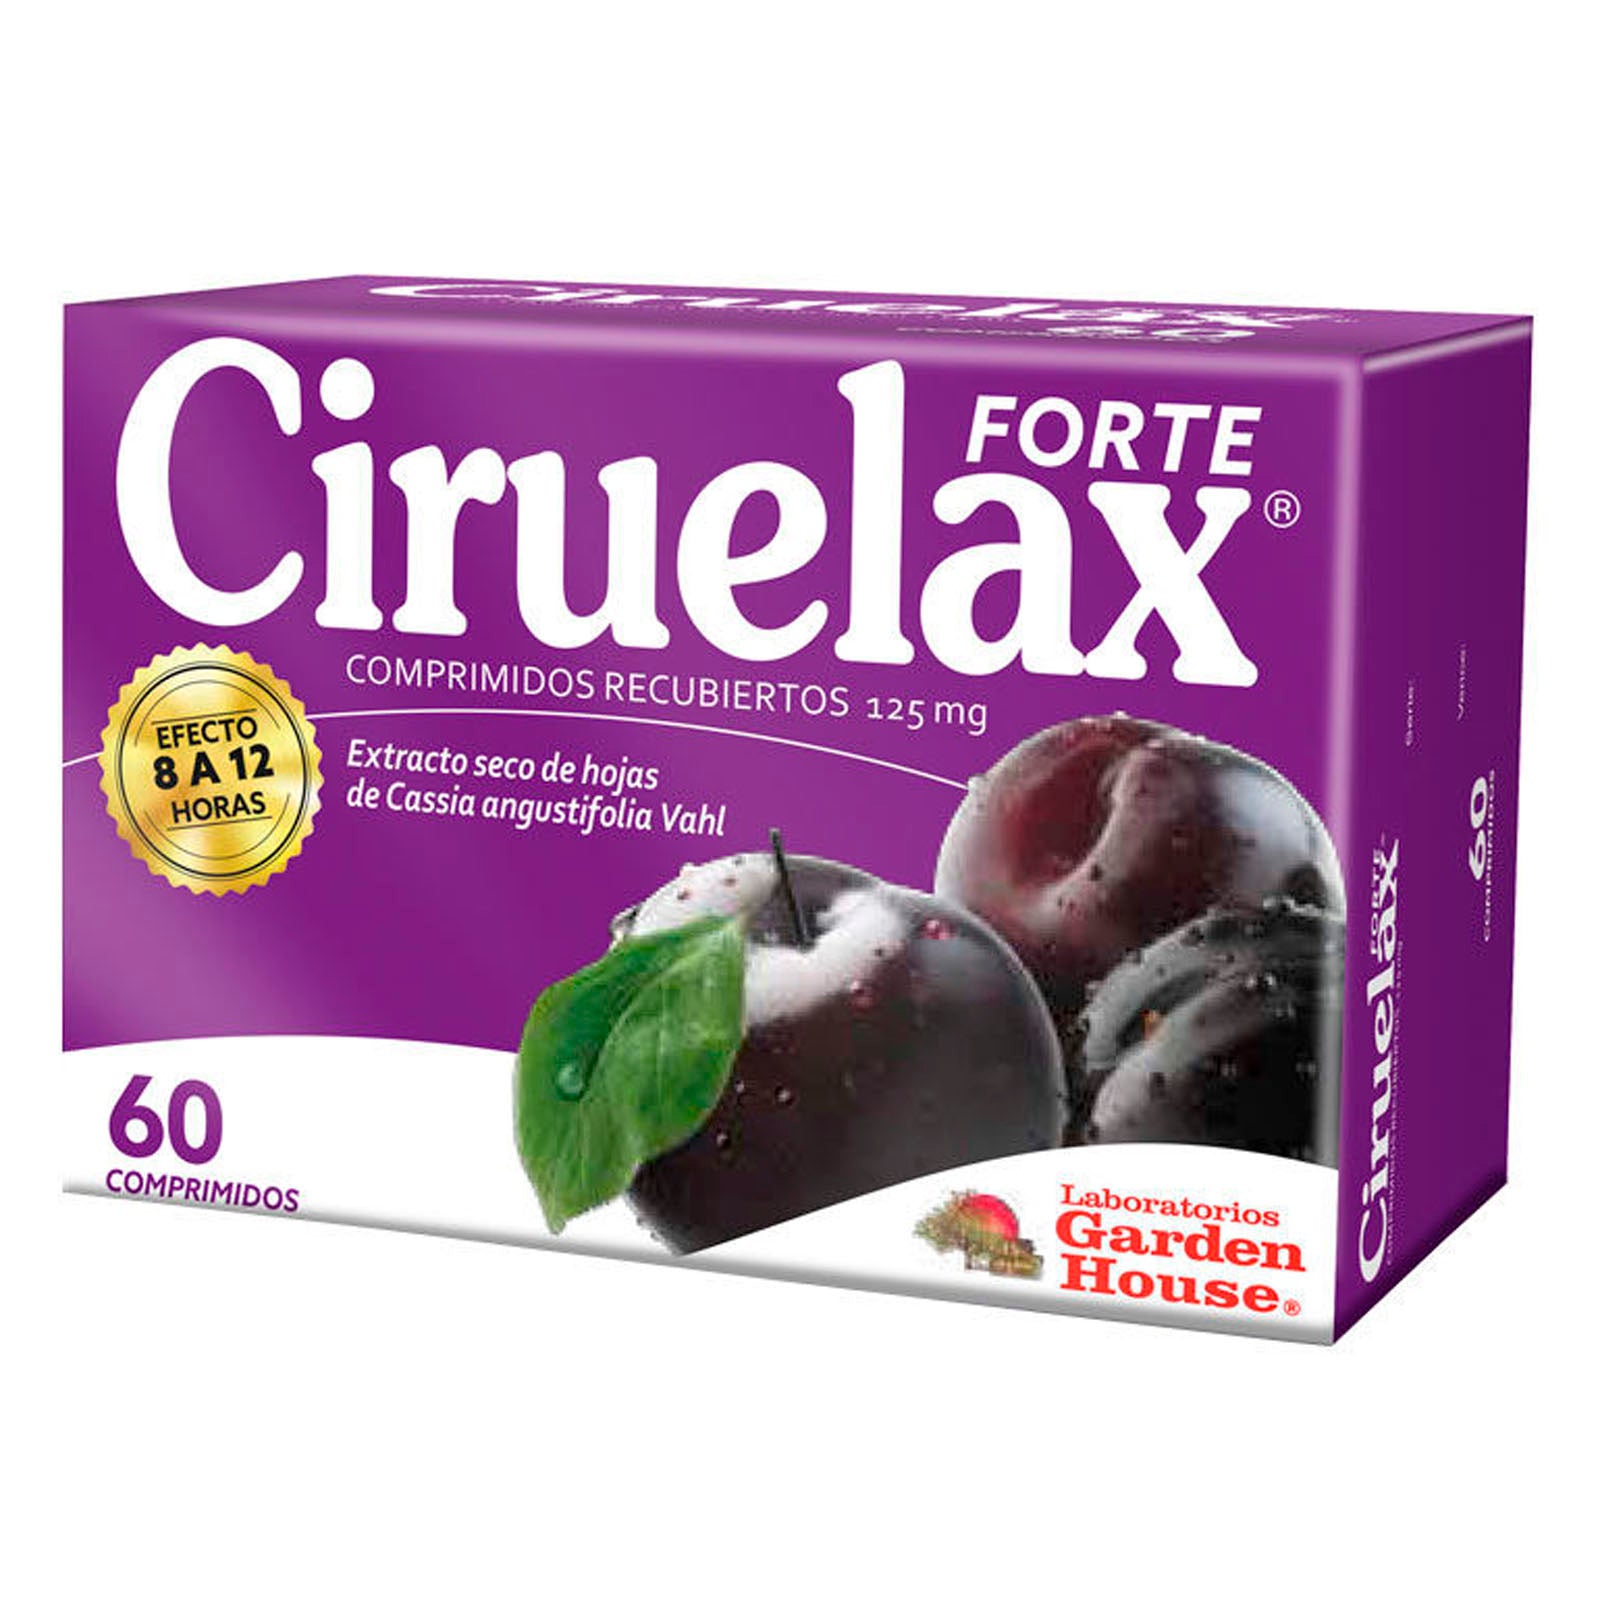 Ciruelax Forte Comprimidos recubiertos